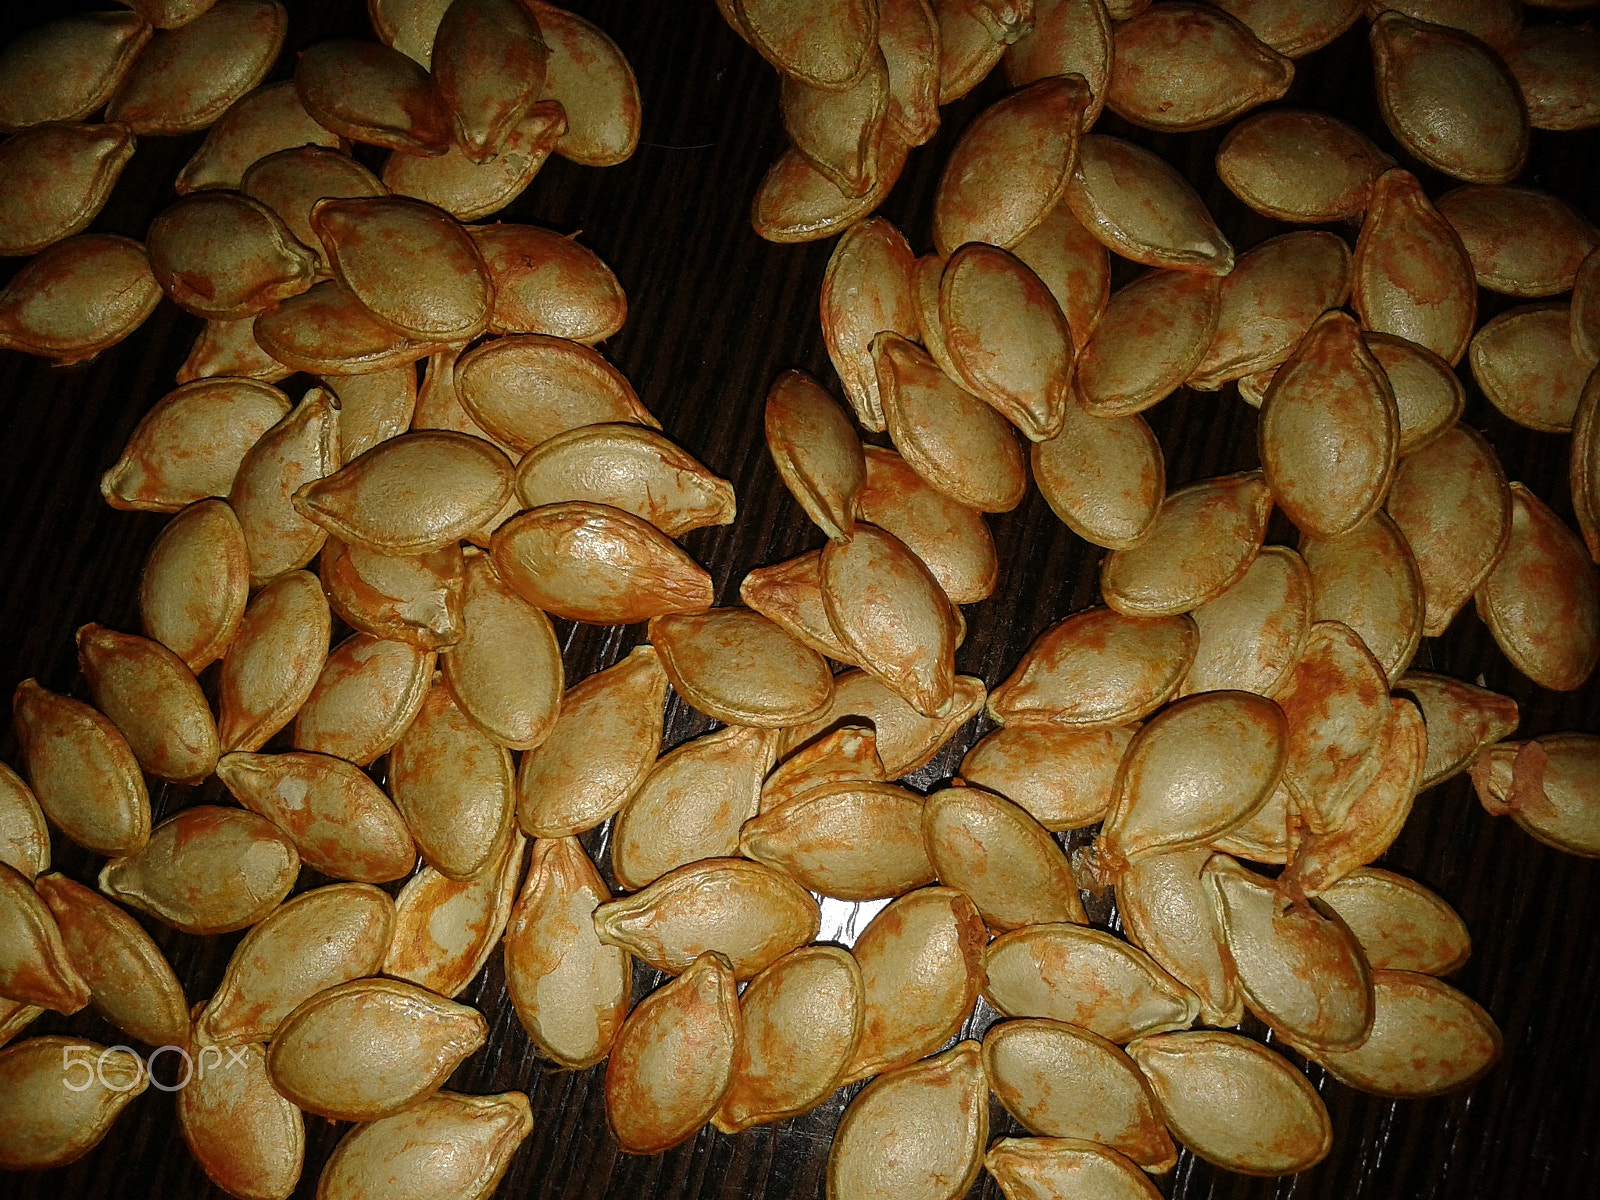 Samsung GT-S5610 sample photo. Pumpkin seeds / тыквенные семечки photography